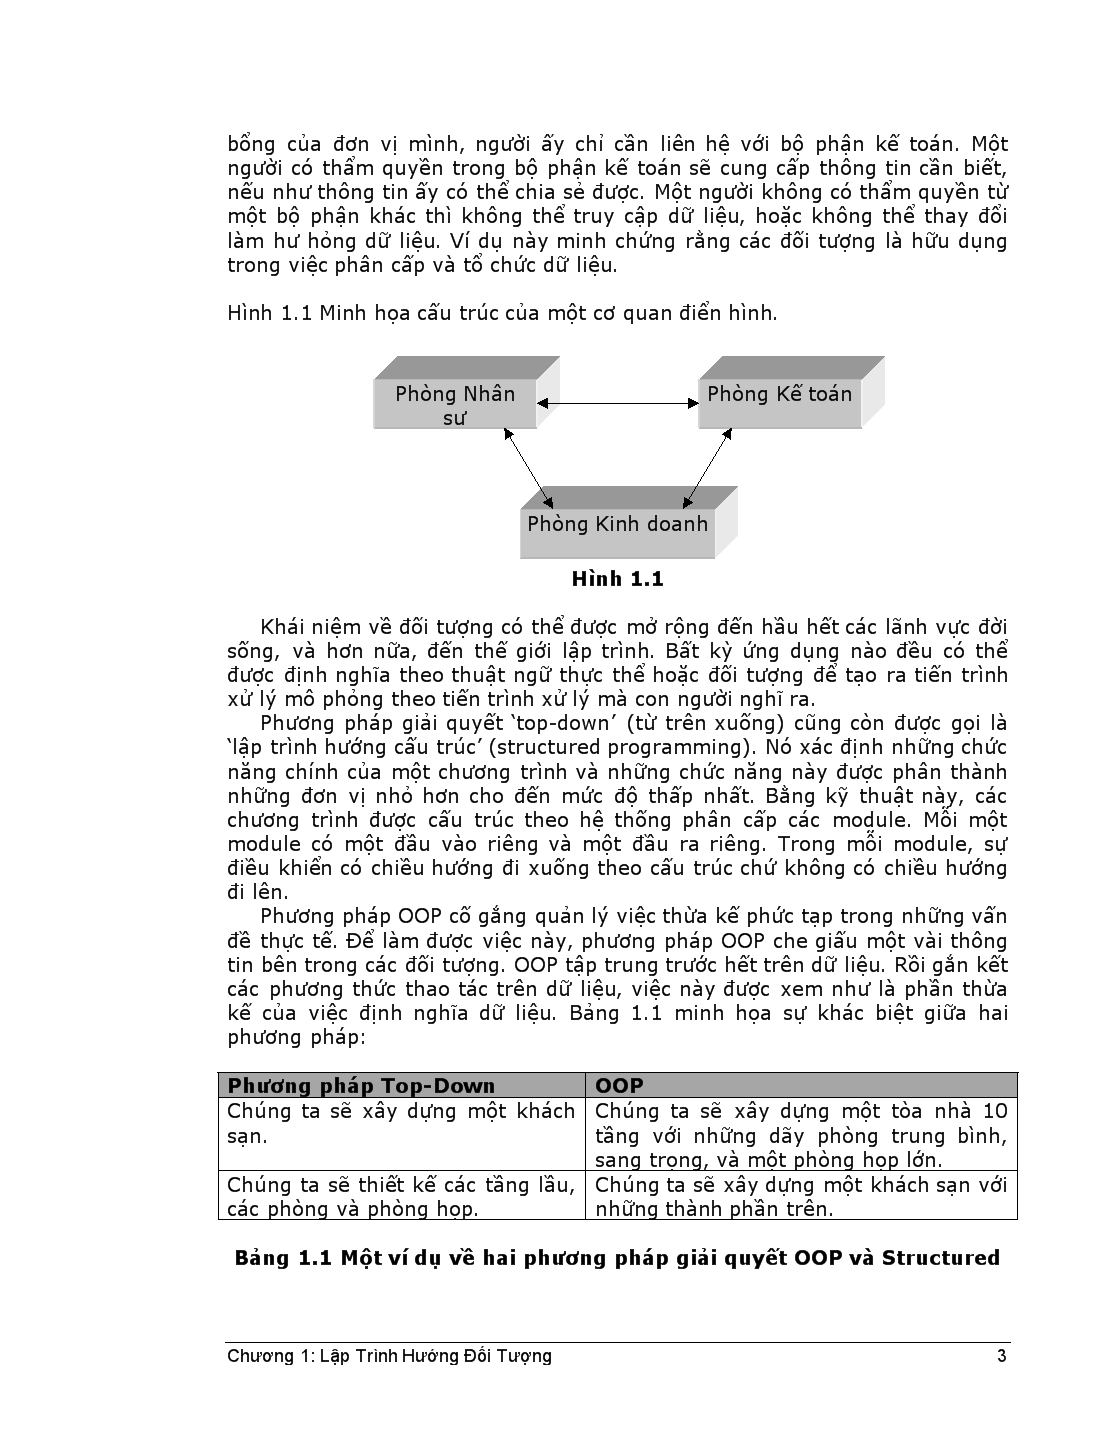 Lập trình hướng đối tượng trang 3